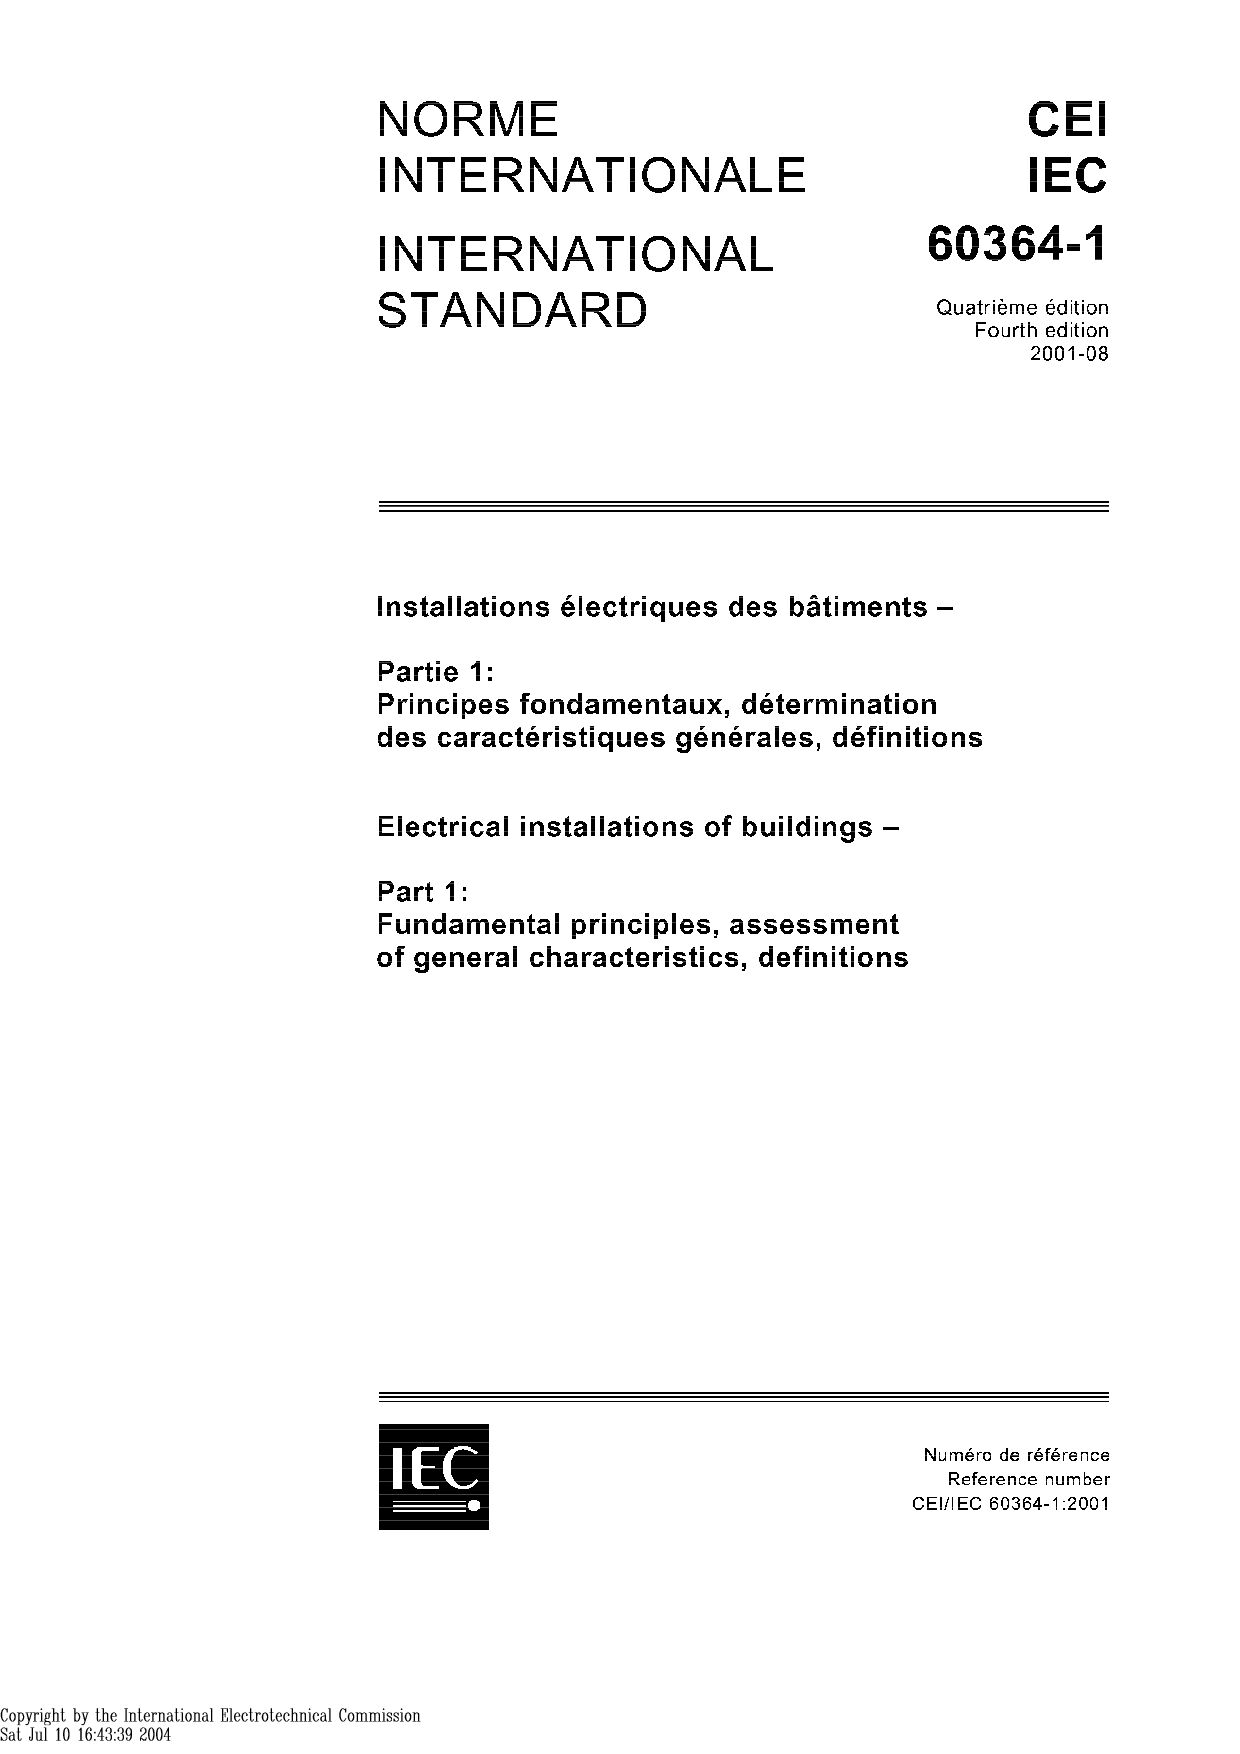 IEC 60364-1:2001